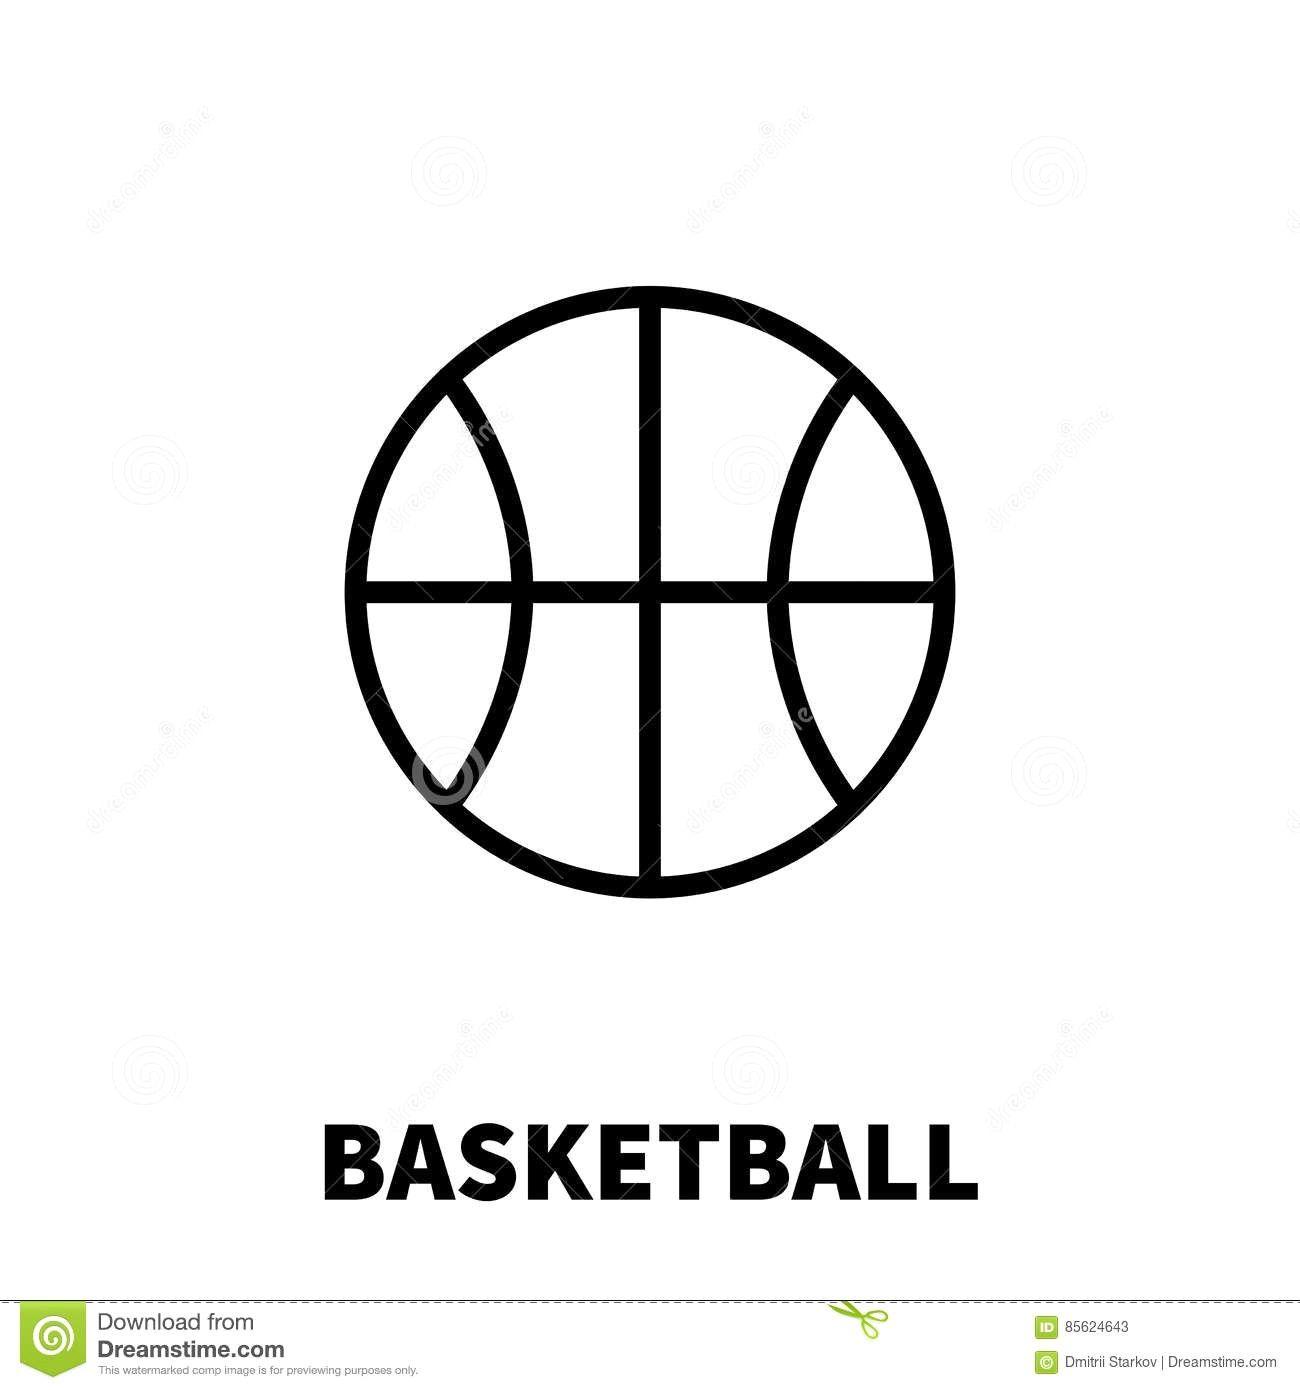 Modern Basketball Logo - Stock Vector Basketball Outline On White Background 275698250 Lines ...